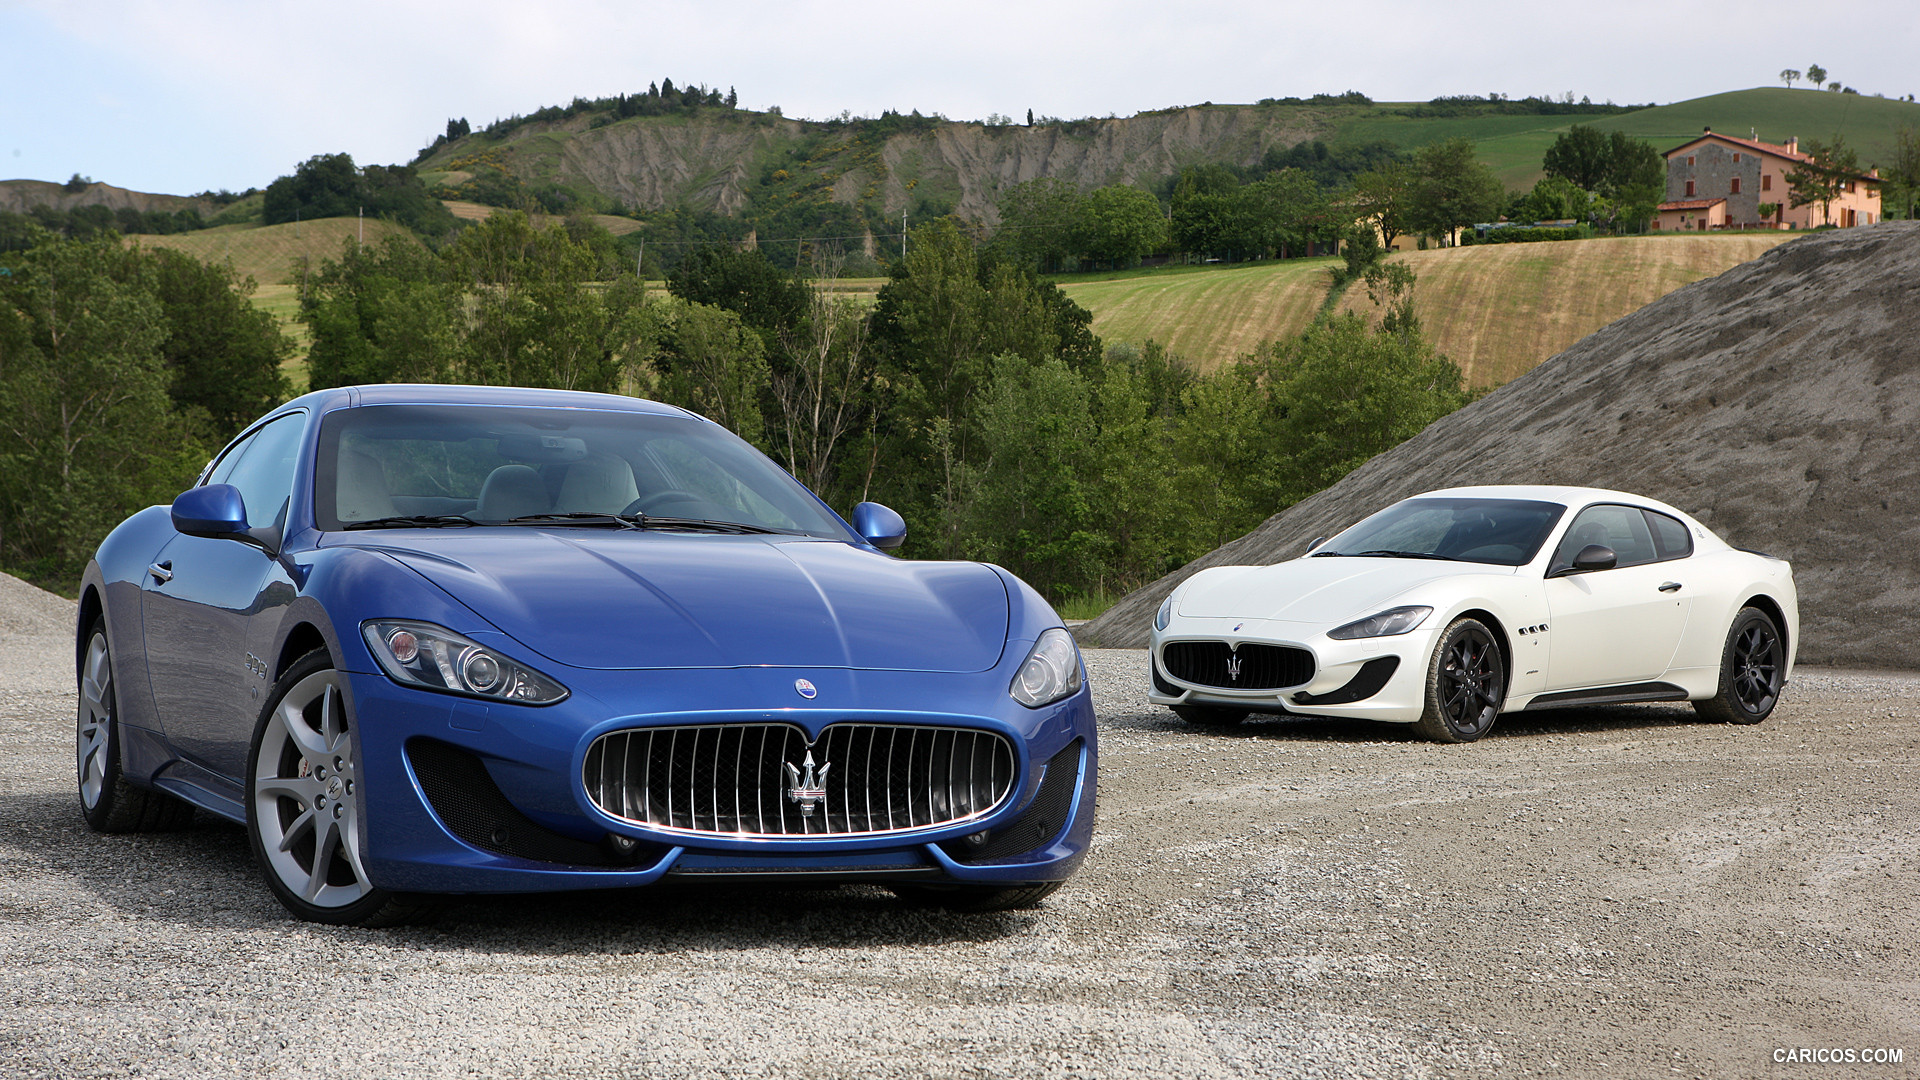 2013 Maserati GranTurismo Sport Duo - Front, #19 of 63